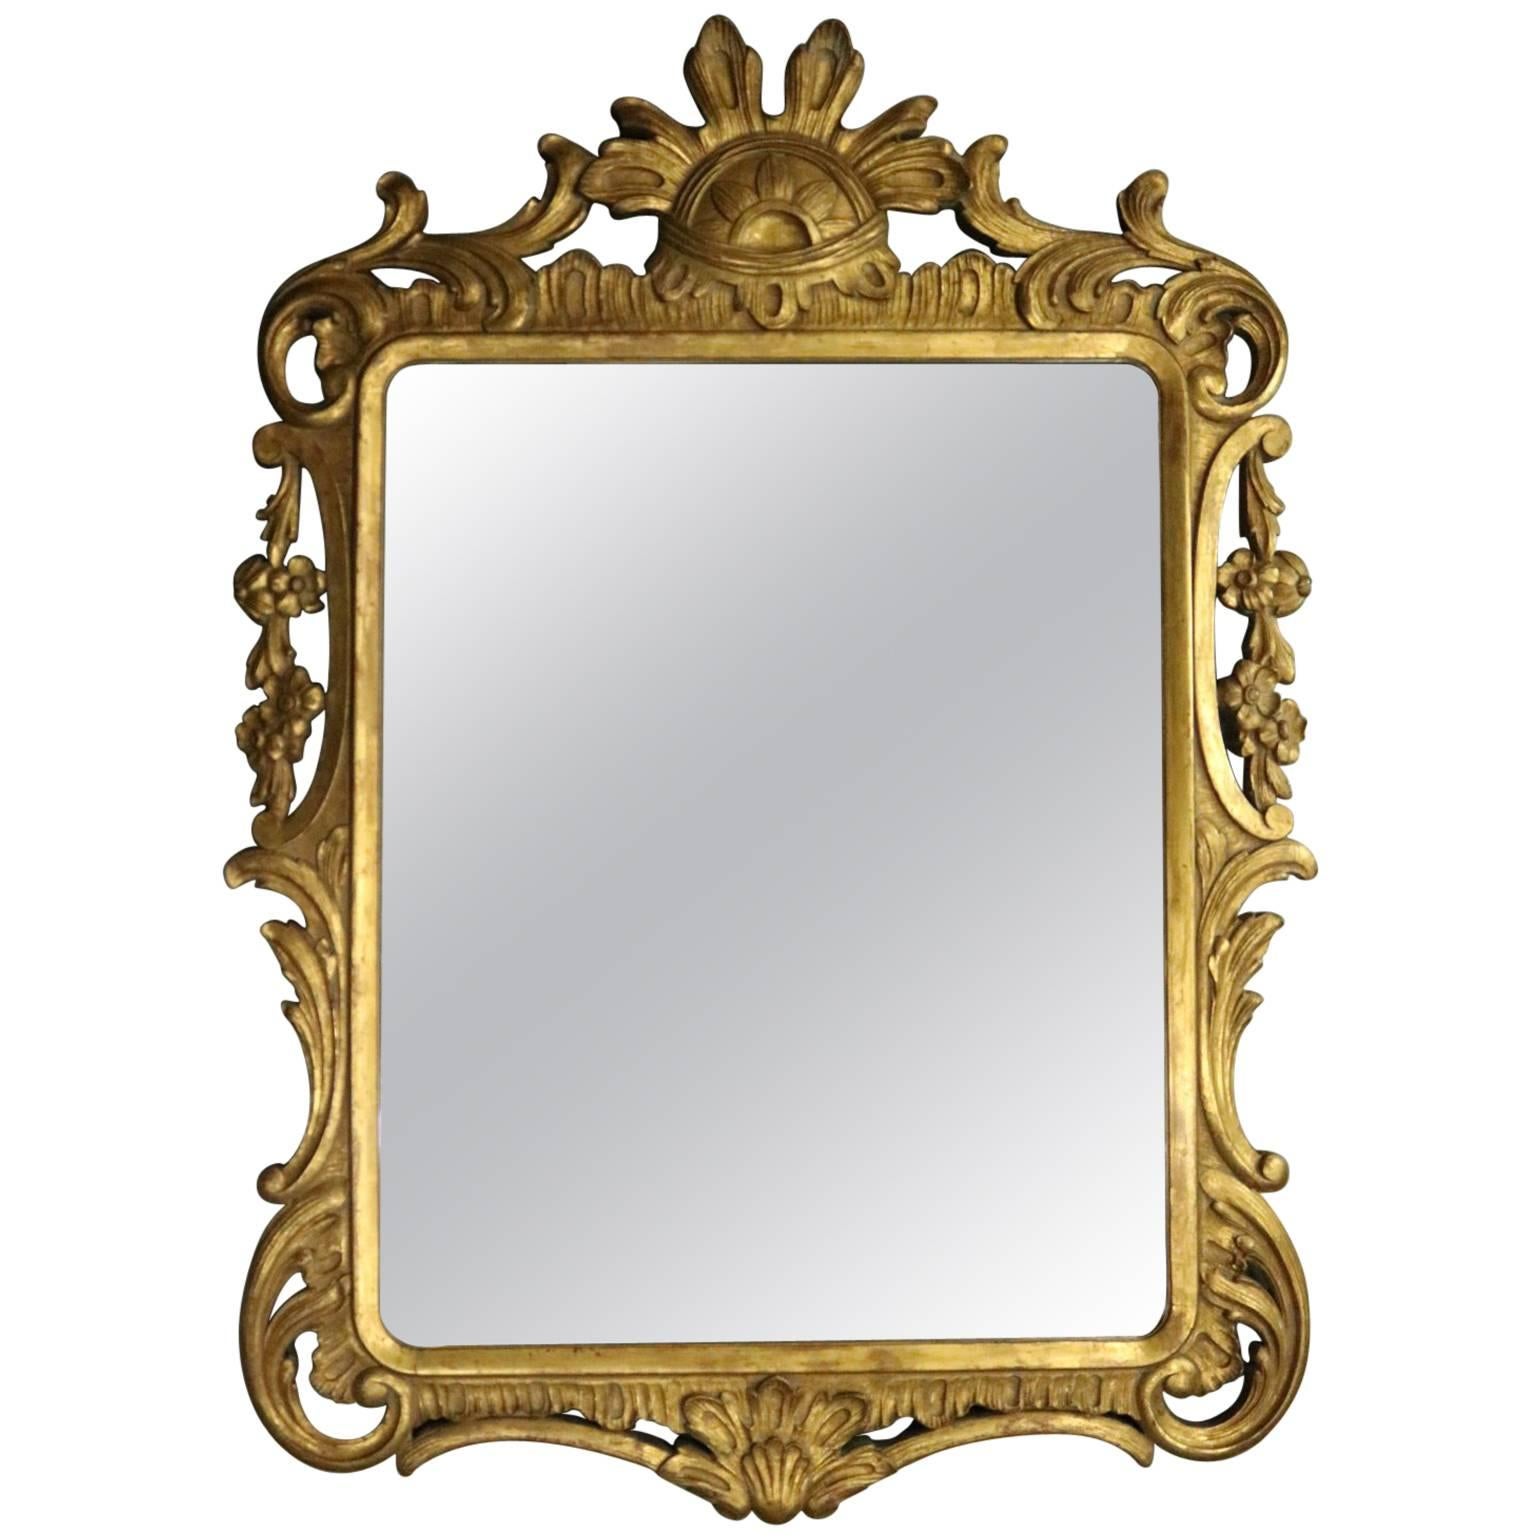 Antique French Pierced Gold Giltwood Wall Mirror, Scroll & Foliate Design